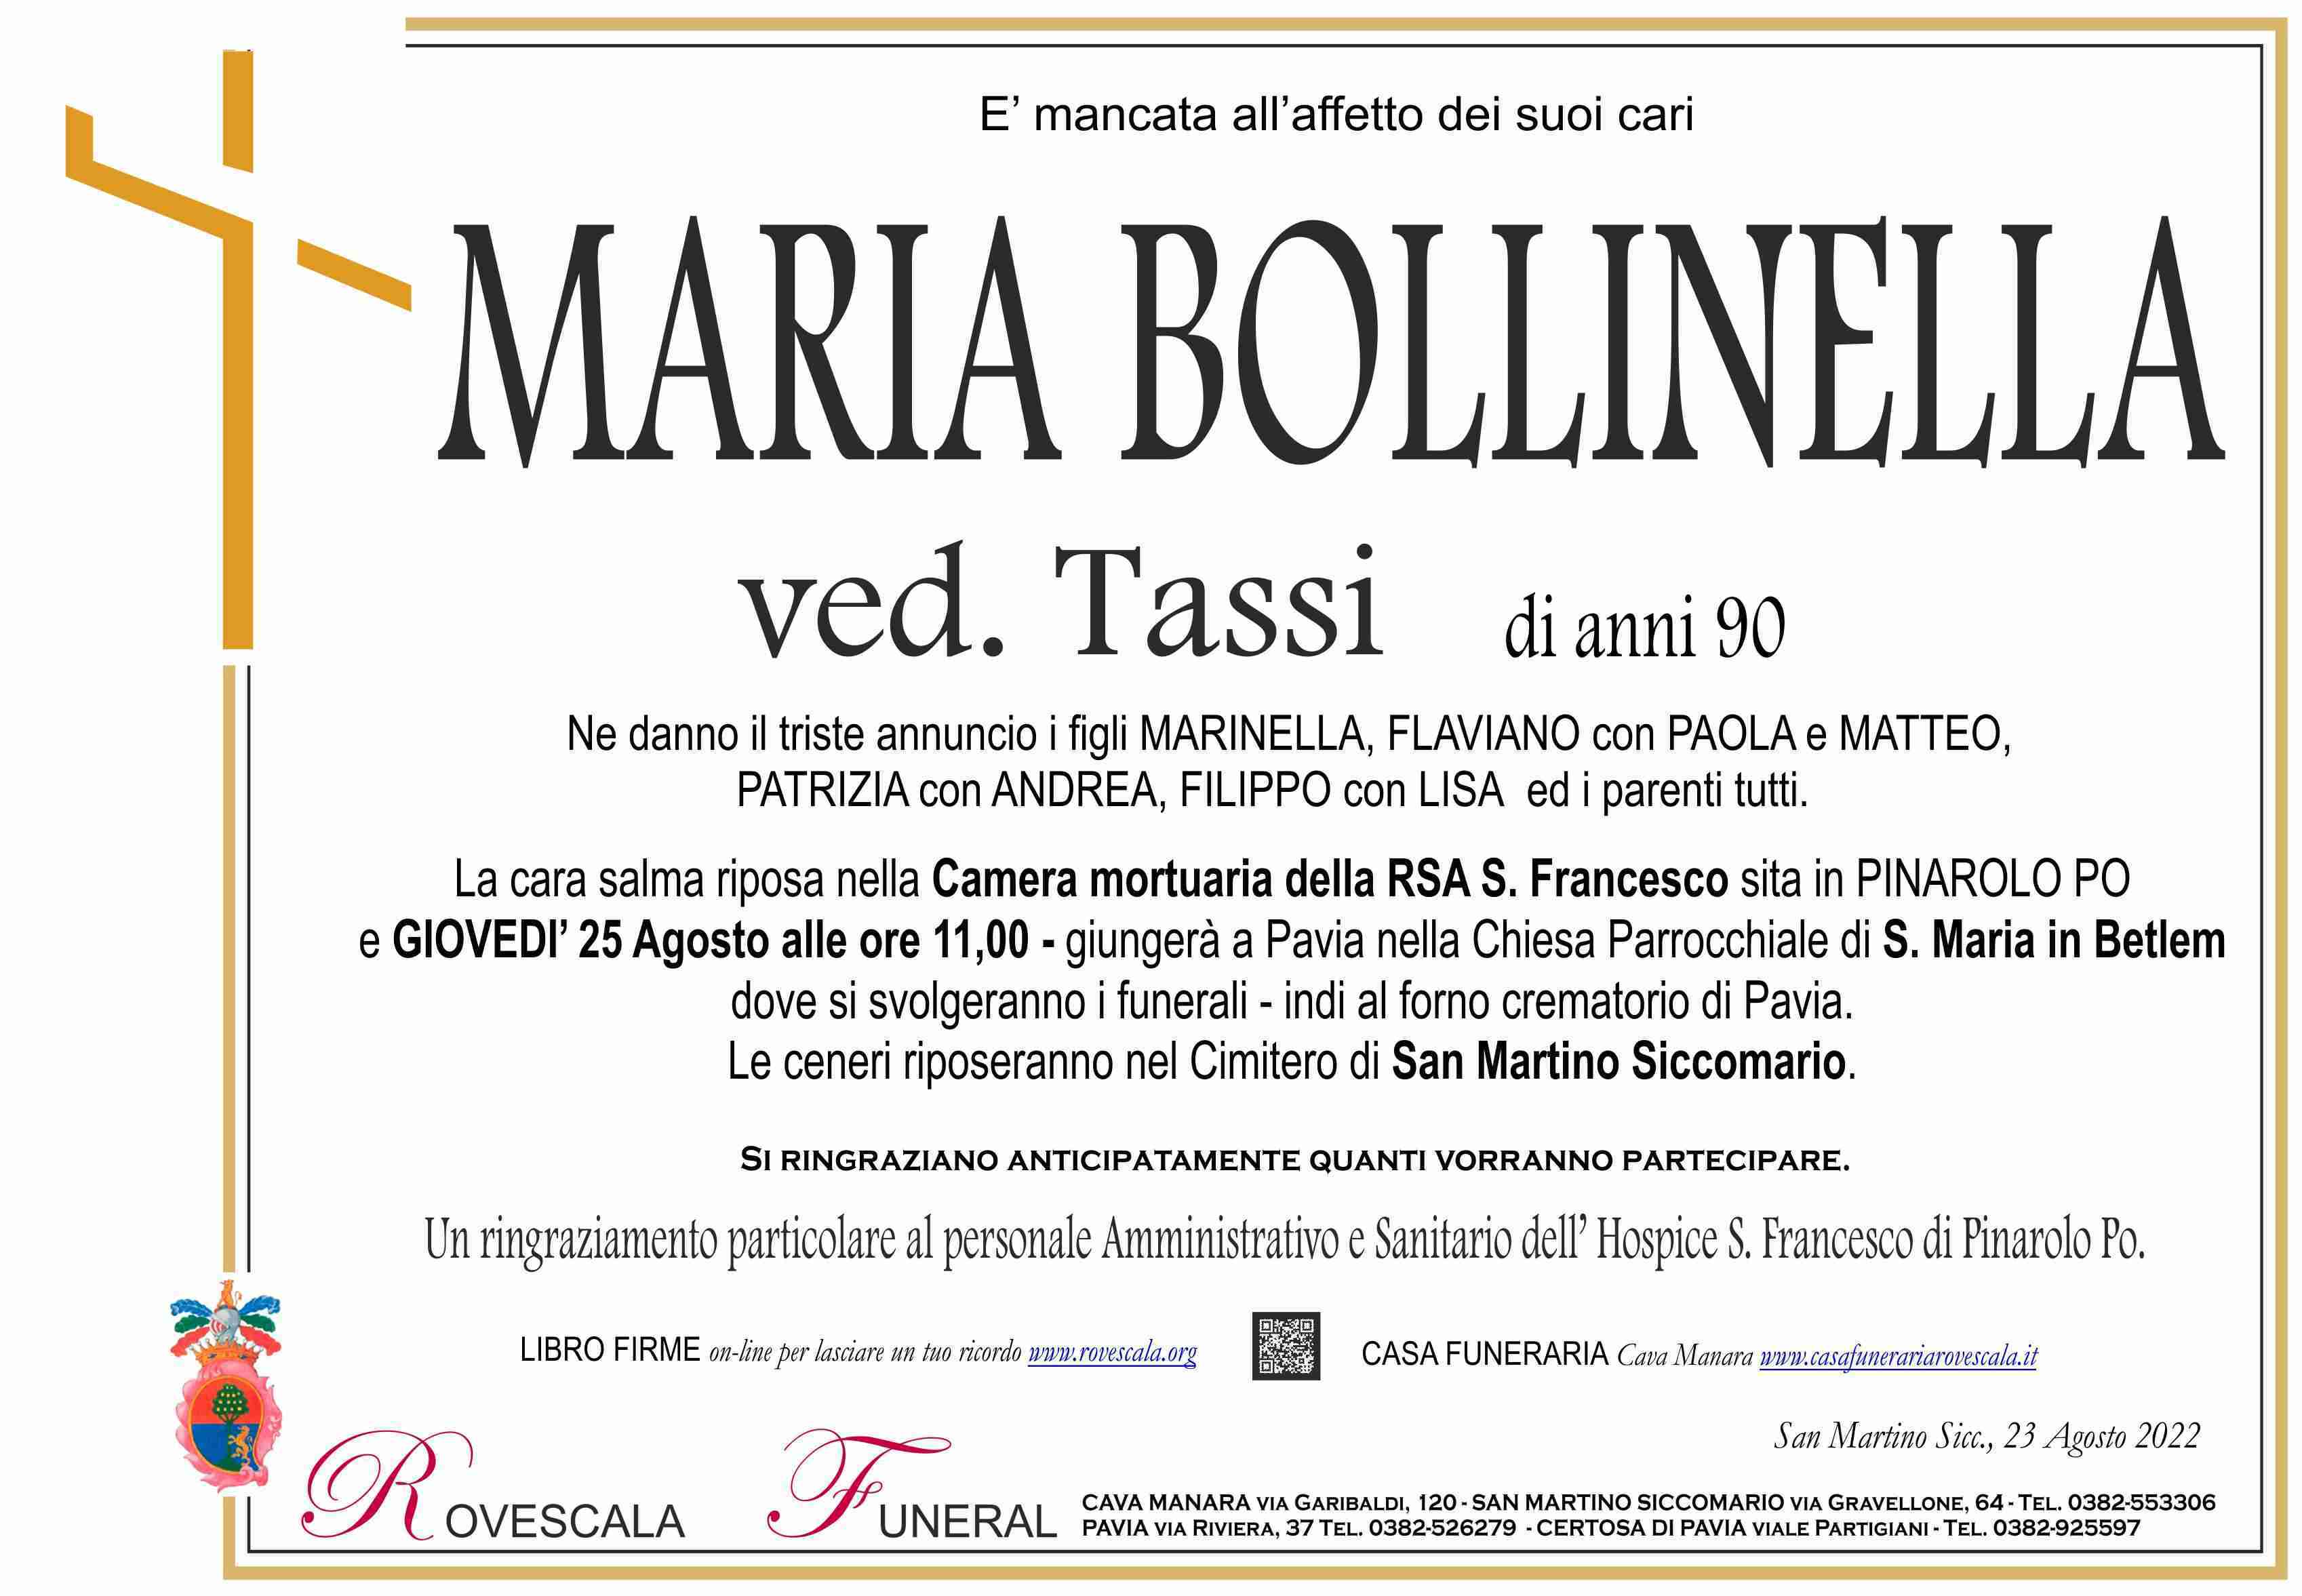 Maria Bollinella